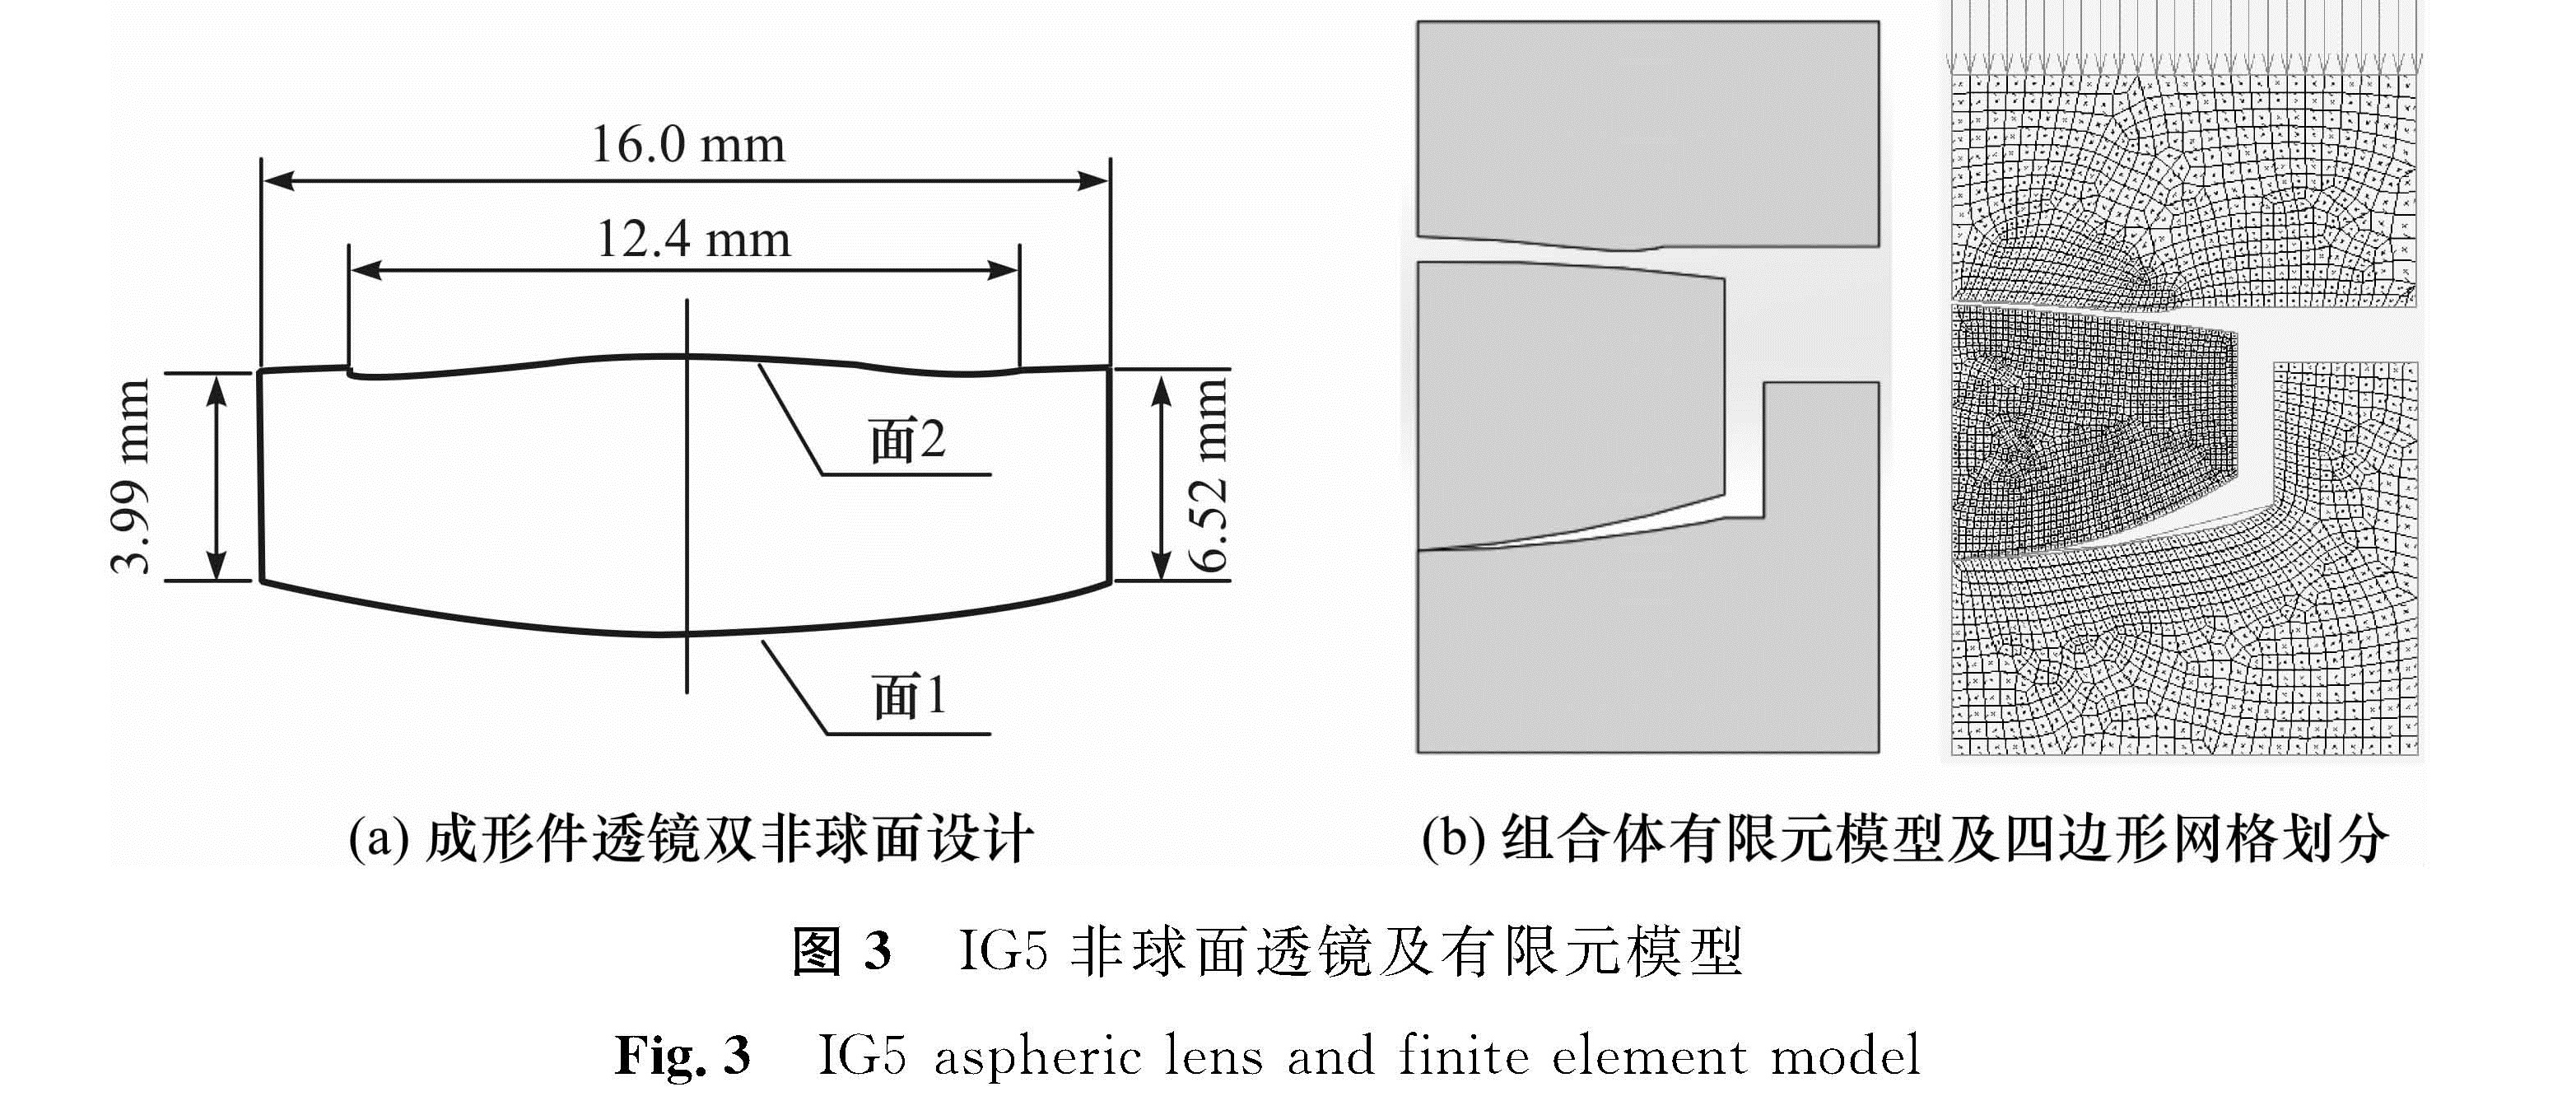 图3 IG5非球面透镜及有限元模型<br/>Fig.3 IG5 aspheric lens and finite element model